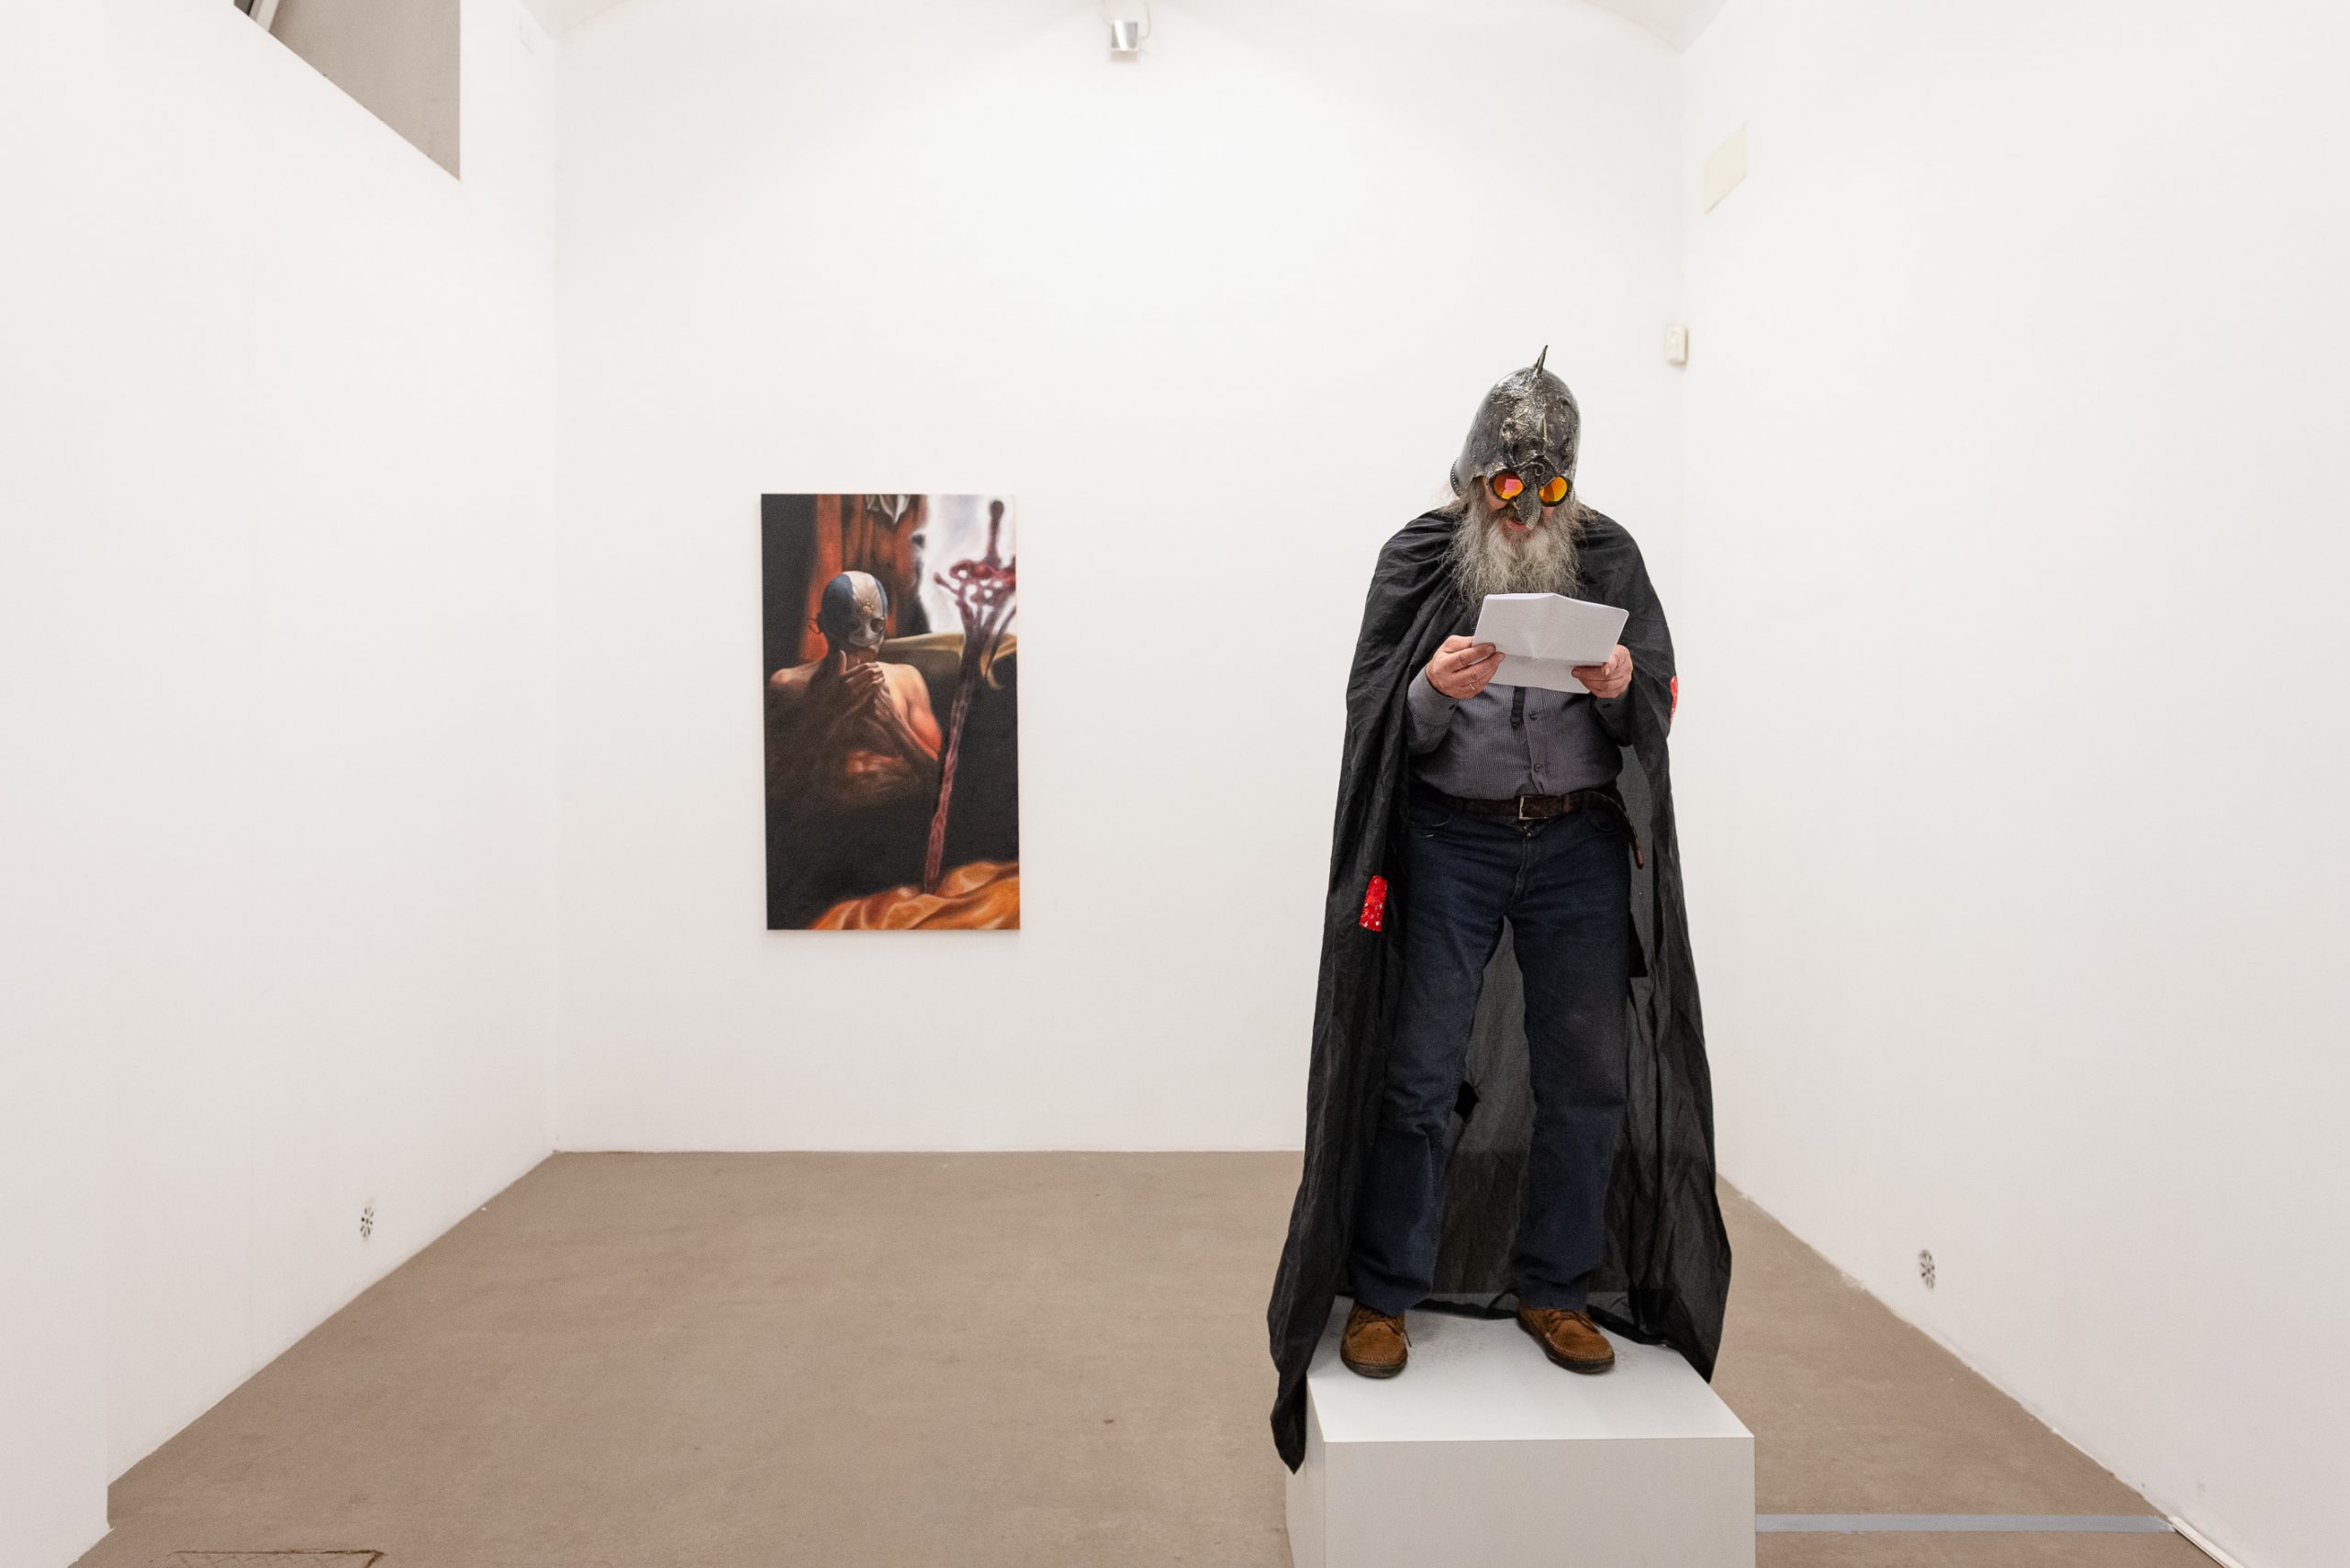 Diego Gualandris, Giangranchio - La versione del supereroe Cartello, 2021. Photo by Roberto Apa